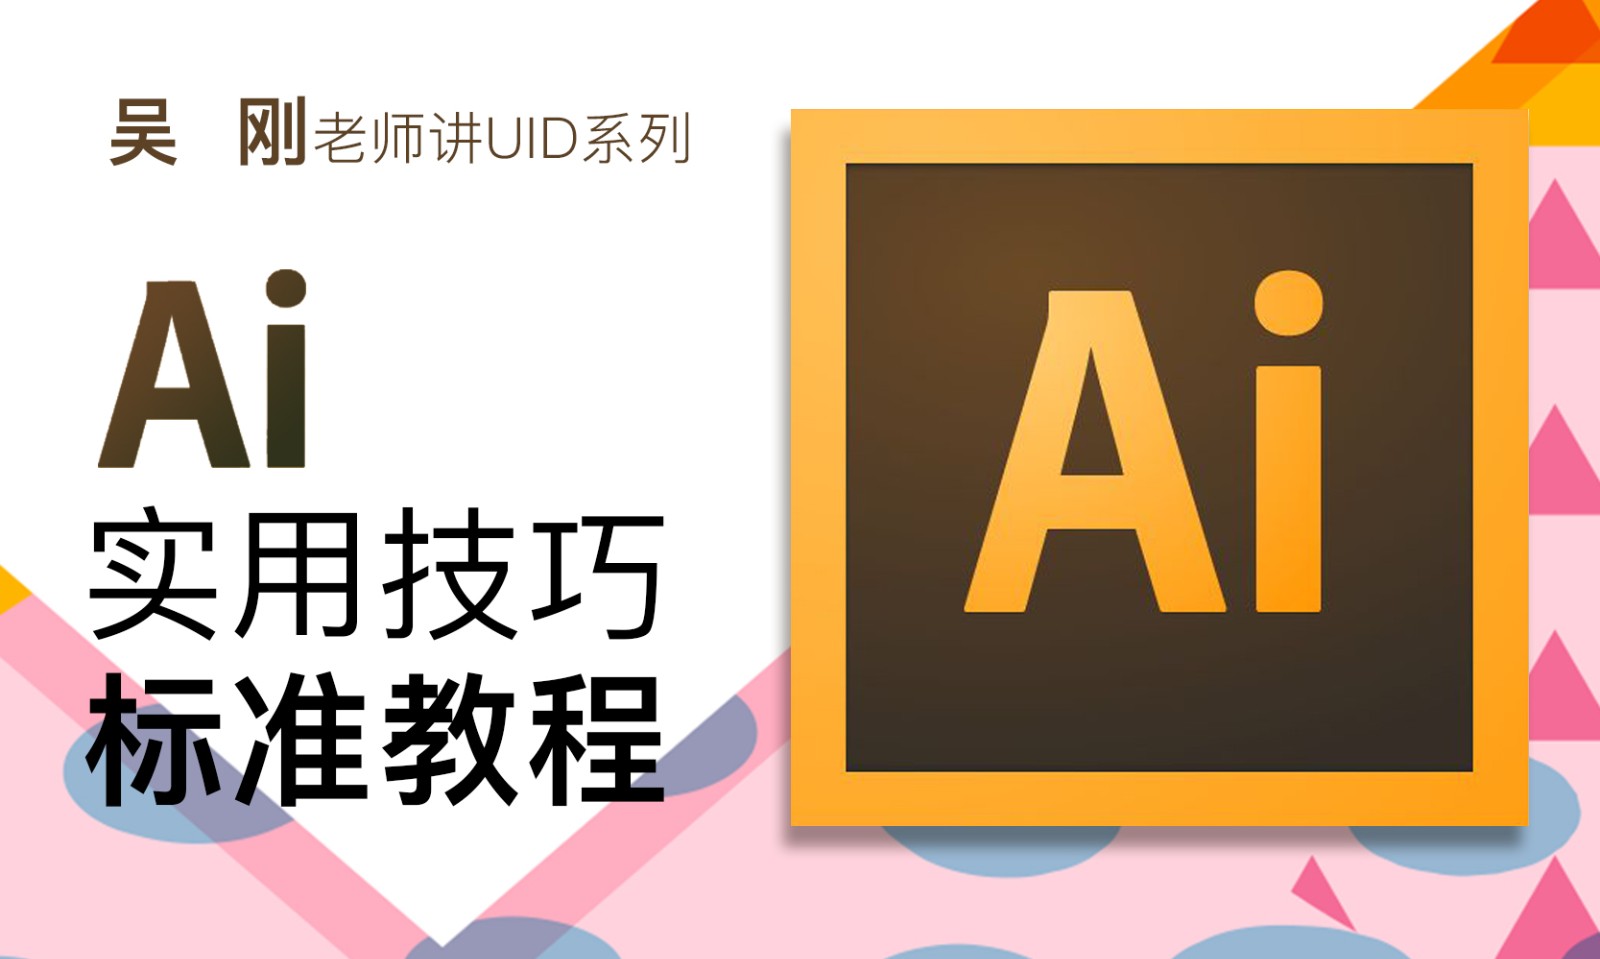 【吴刚大讲堂】AI(Adobe Illustrator)软件应用标准视频教程